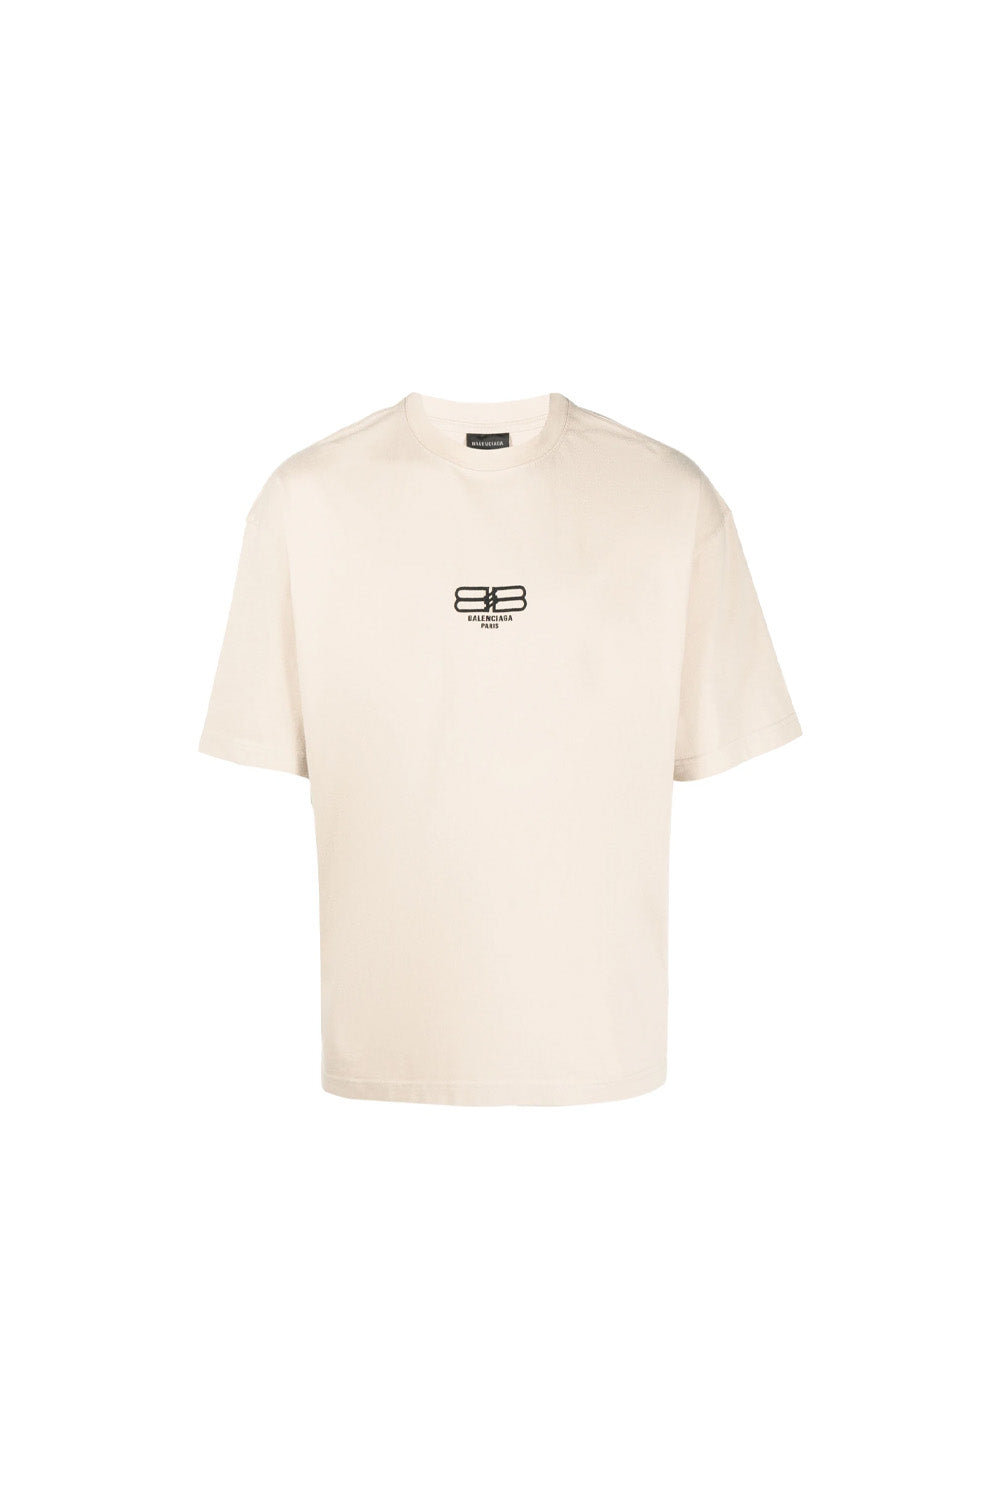 Balenciaga logo-embroidered crew-neck T-shirt